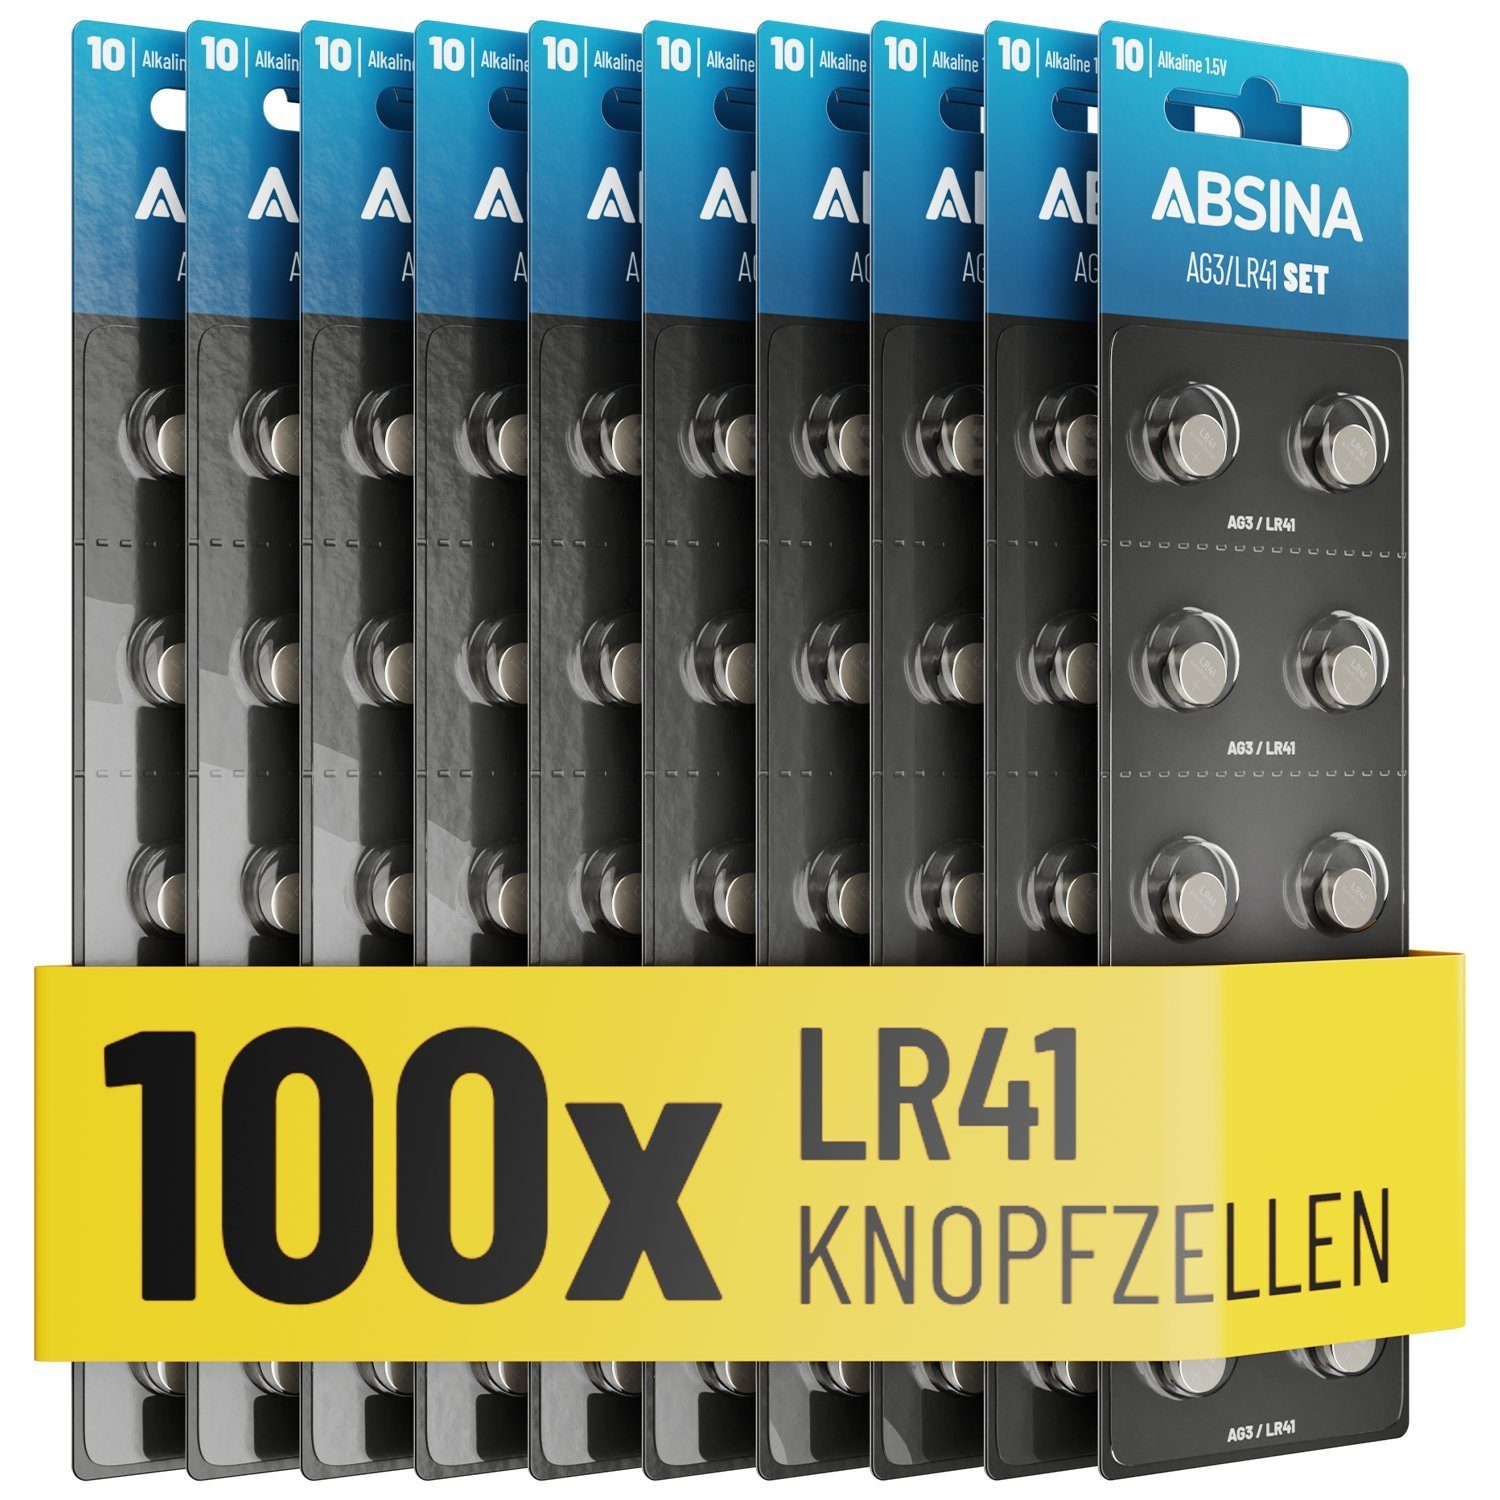 100er Knopfzelle - GP192 / LR736 - L736 - G3A ABSINA langer 192 / / RW87 Haltbarkeit Knopfzelle, Knopfbatterien AG3 1,5V LR41 G3 / / St) & / / Knopfzellen / Batterie Alkaline 3GA auslaufsicher V3GA mit (10 Batterien Pack